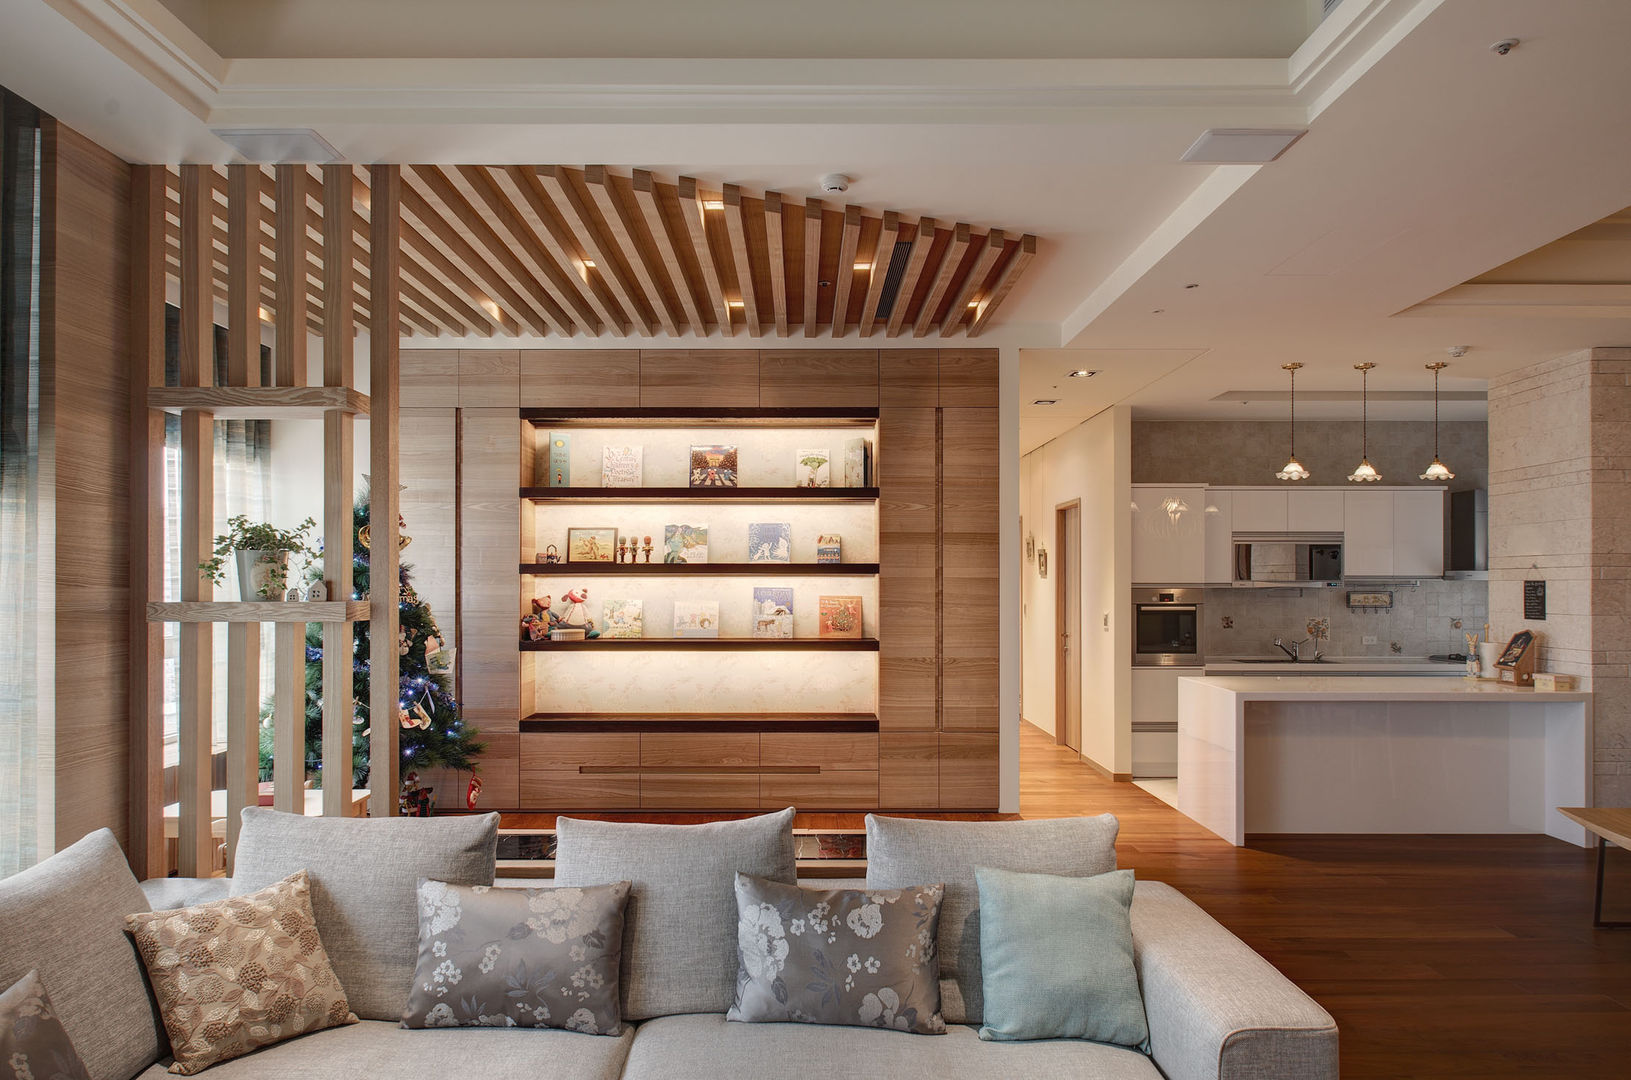 生活溫度, 芸采創意空間設計-YCID Interior Design 芸采創意空間設計-YCID Interior Design Modern living room